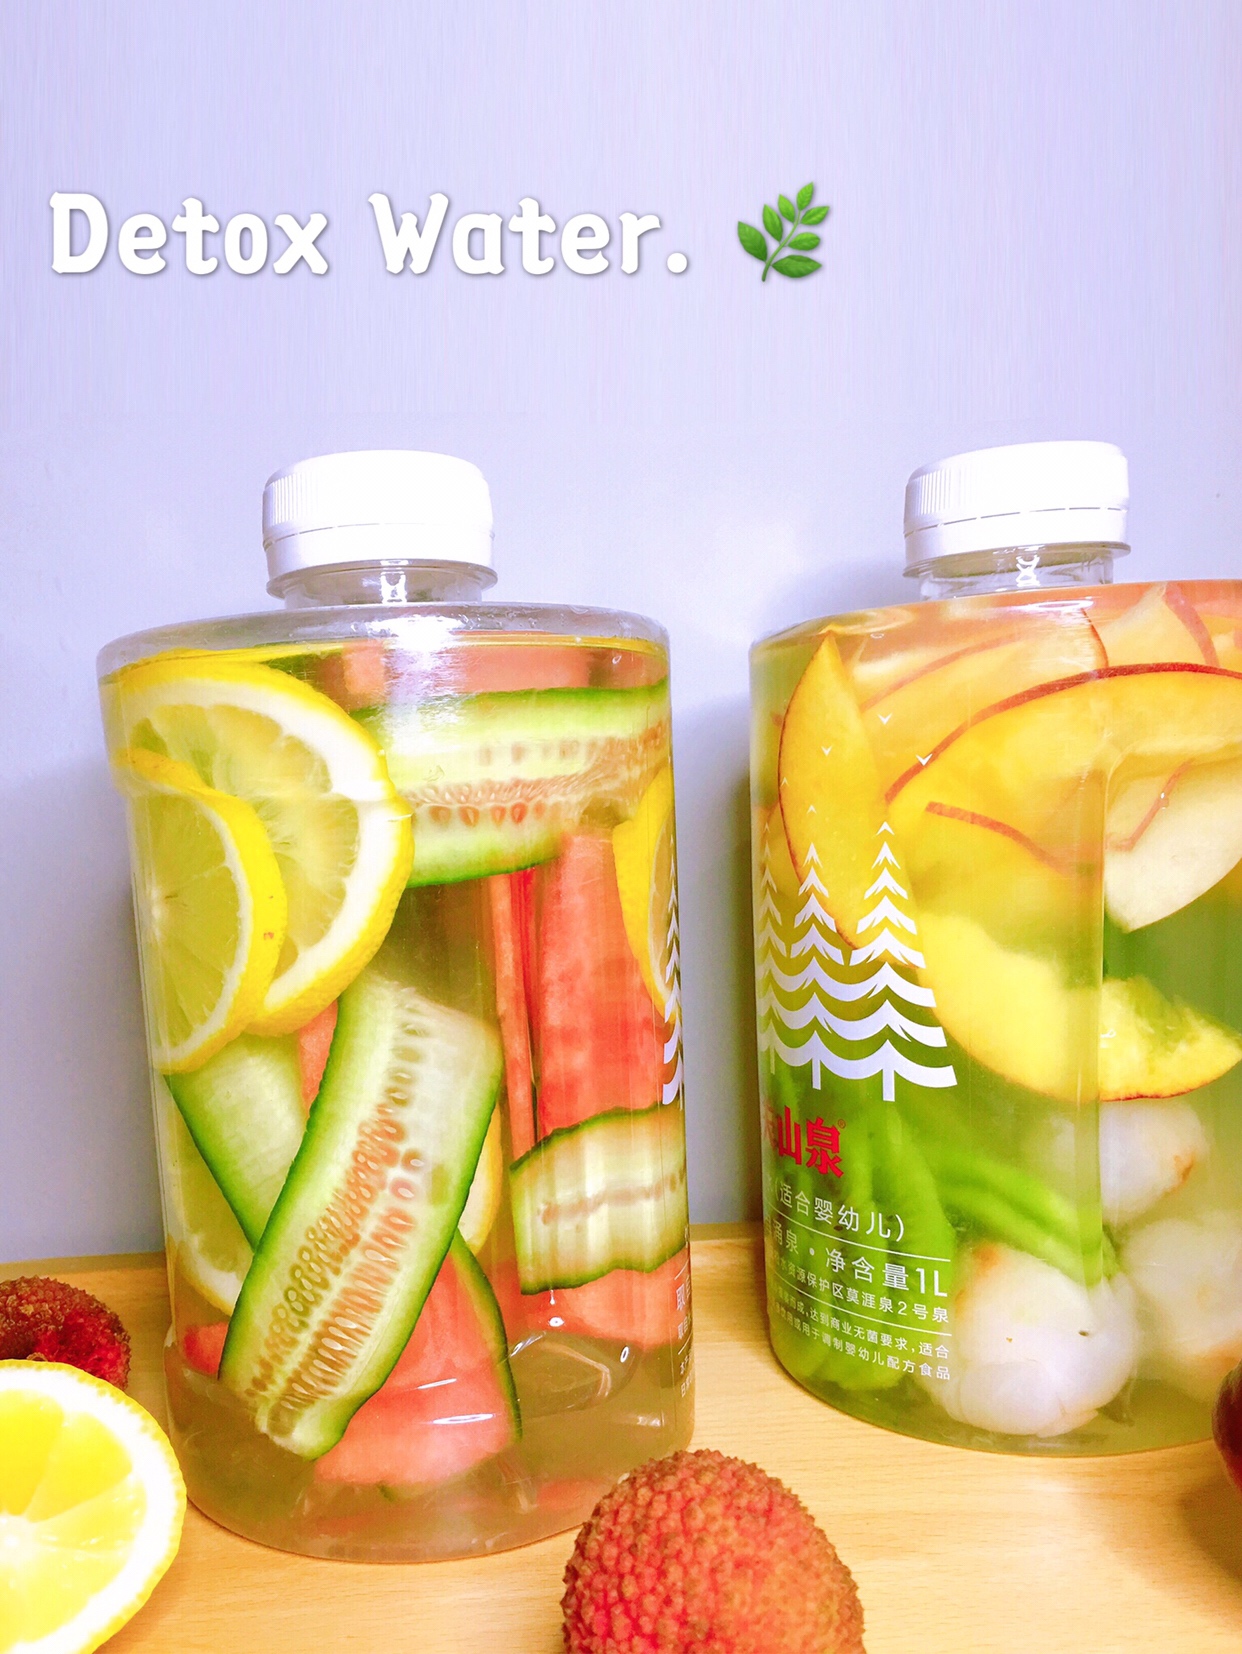 夏日饮品 | Detox Water排毒水‼️让我从此爱上了喝水